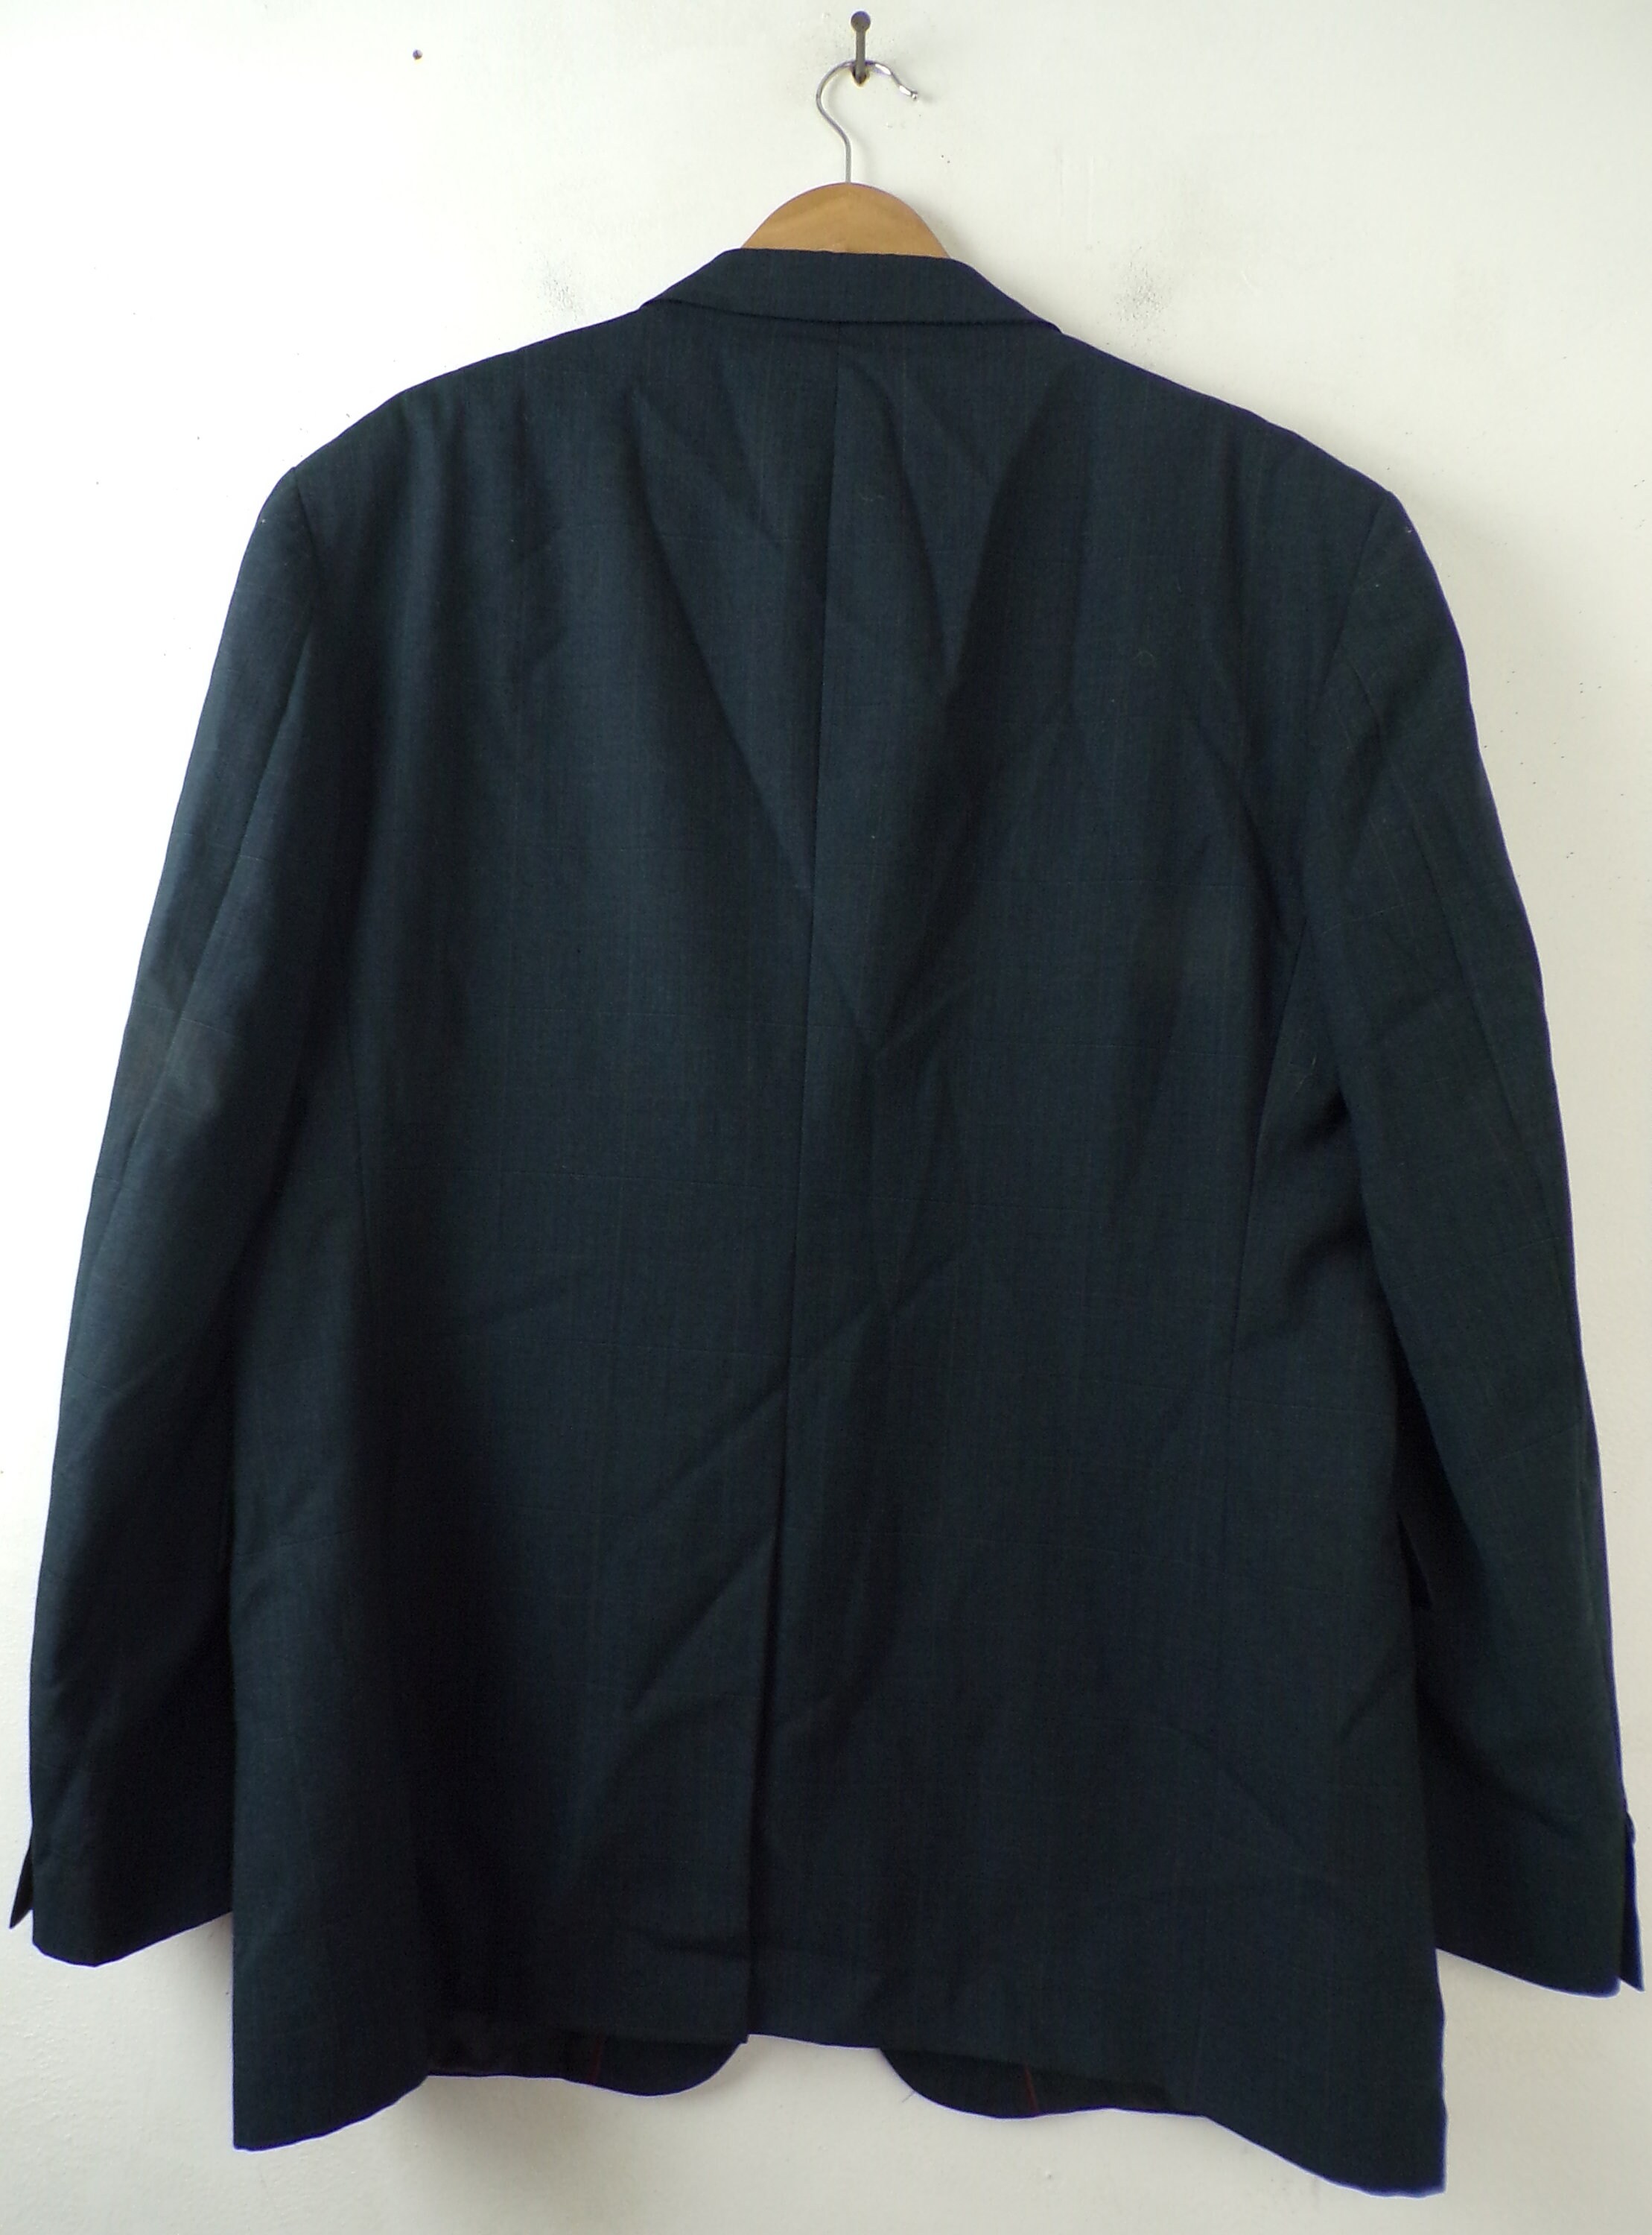 Vintage Mens Plaid Blazer 1990s Black Plaid Evan Picone - Etsy